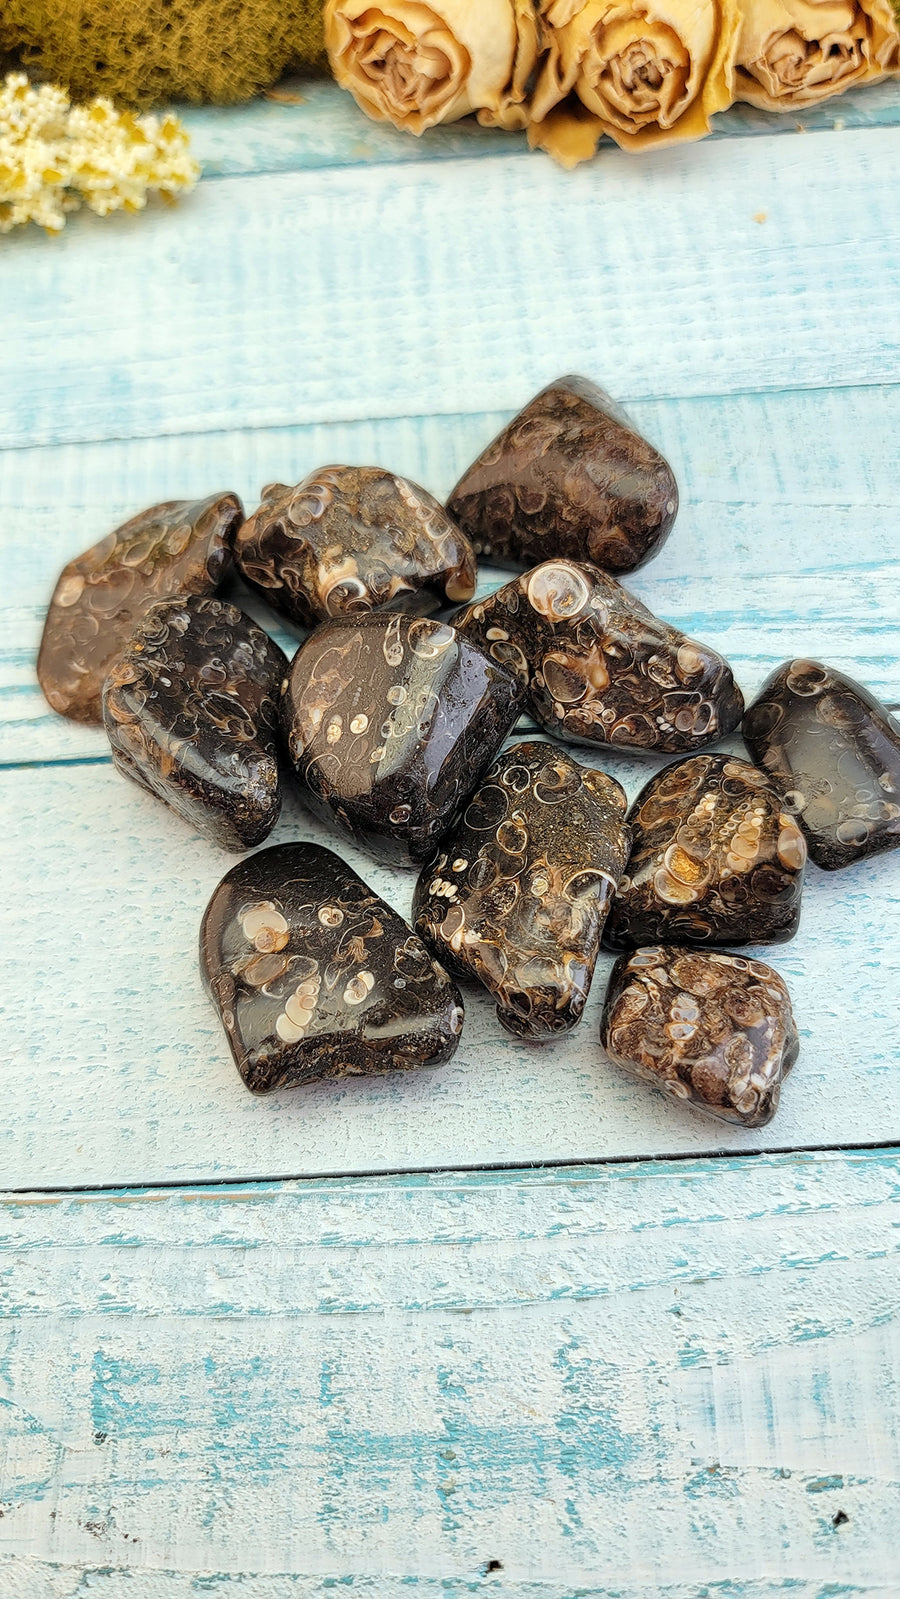 tumbled turitella agate stones on display